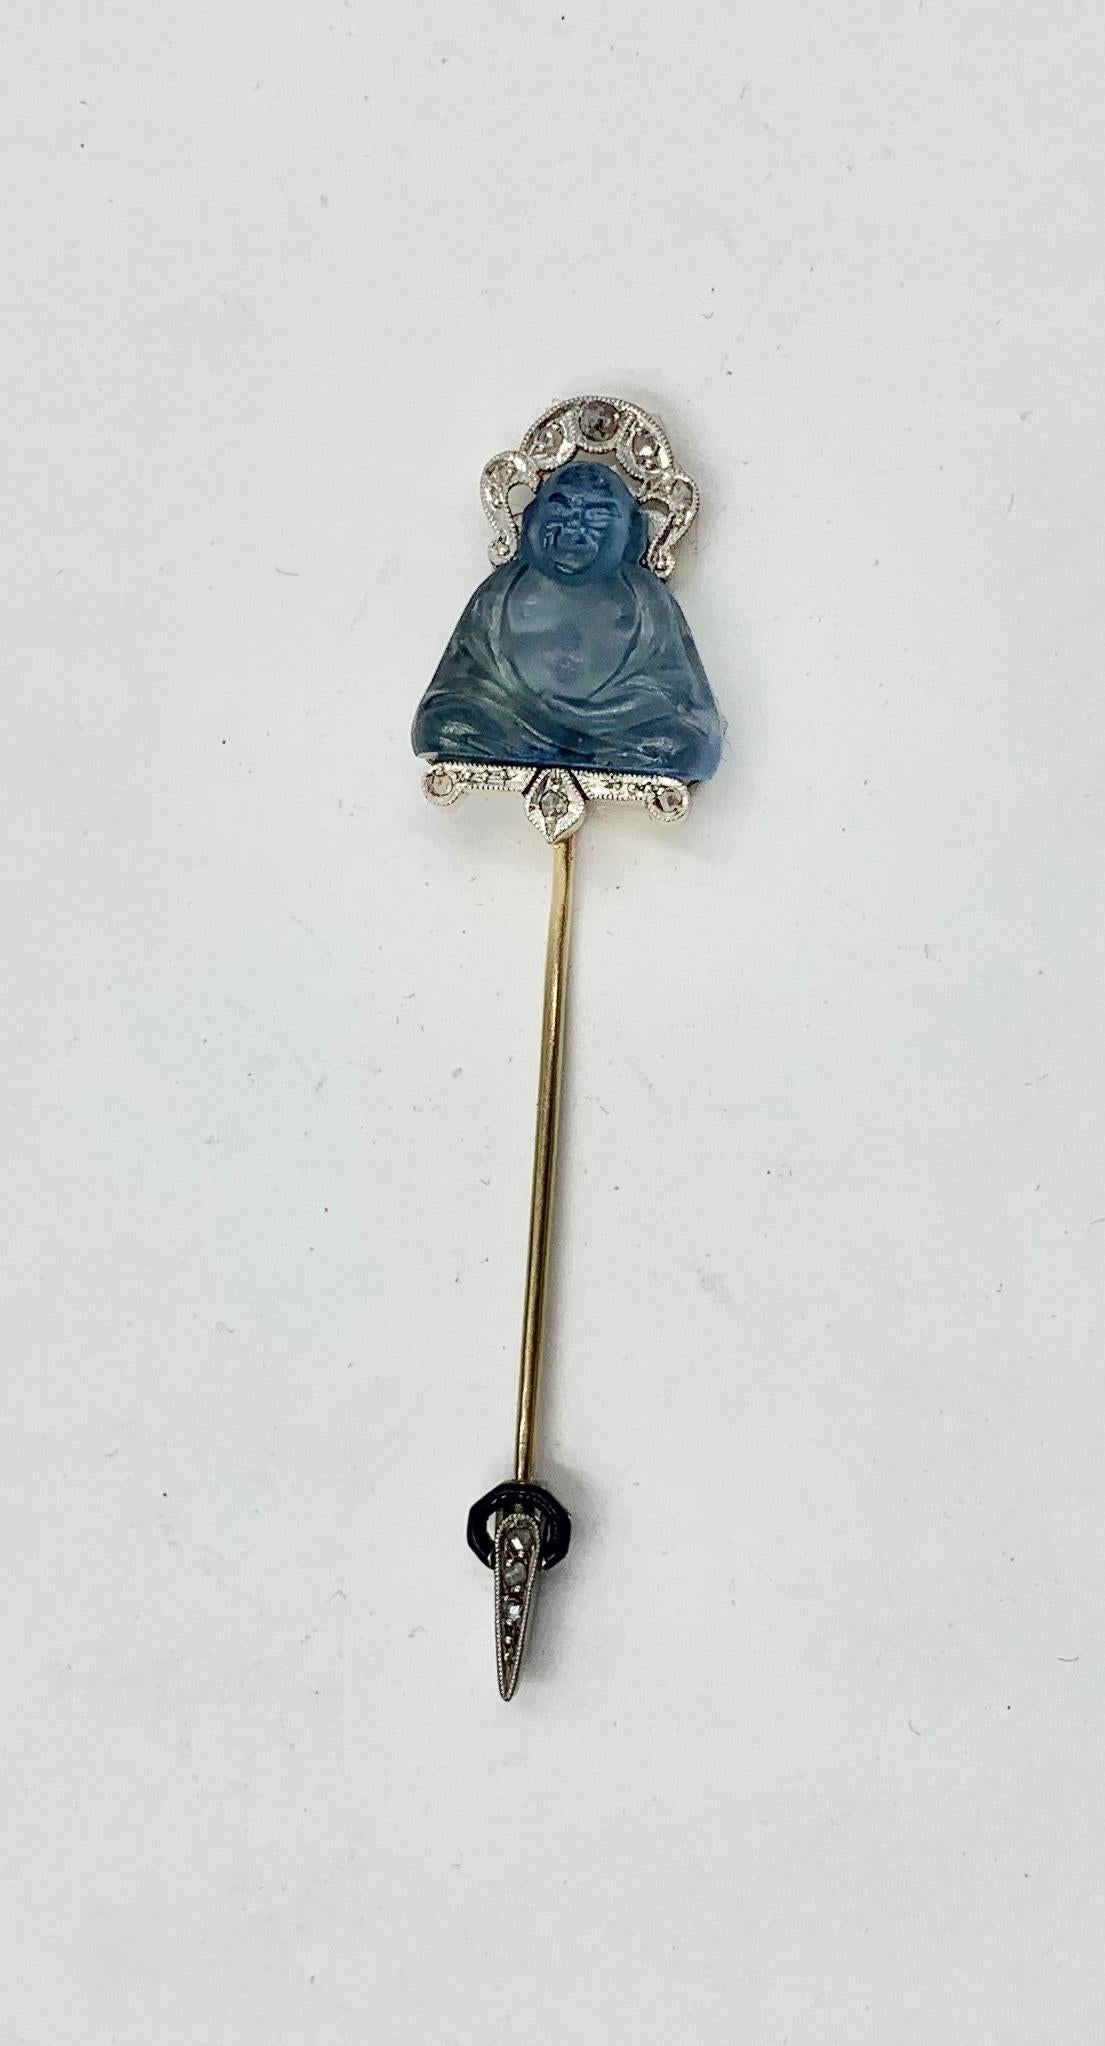 Die Rose Diamond Platinum Emaille Buddha Jabot Pin Brosche ist ein Art Deco Meisterwerk.  Der sitzende Buddha besteht aus blauem Kunstglas und ist absolut exquisit.  Buddha trägt einen Kopfschmuck aus Diamant und Platin mit Rosenschliff.  Unter dem